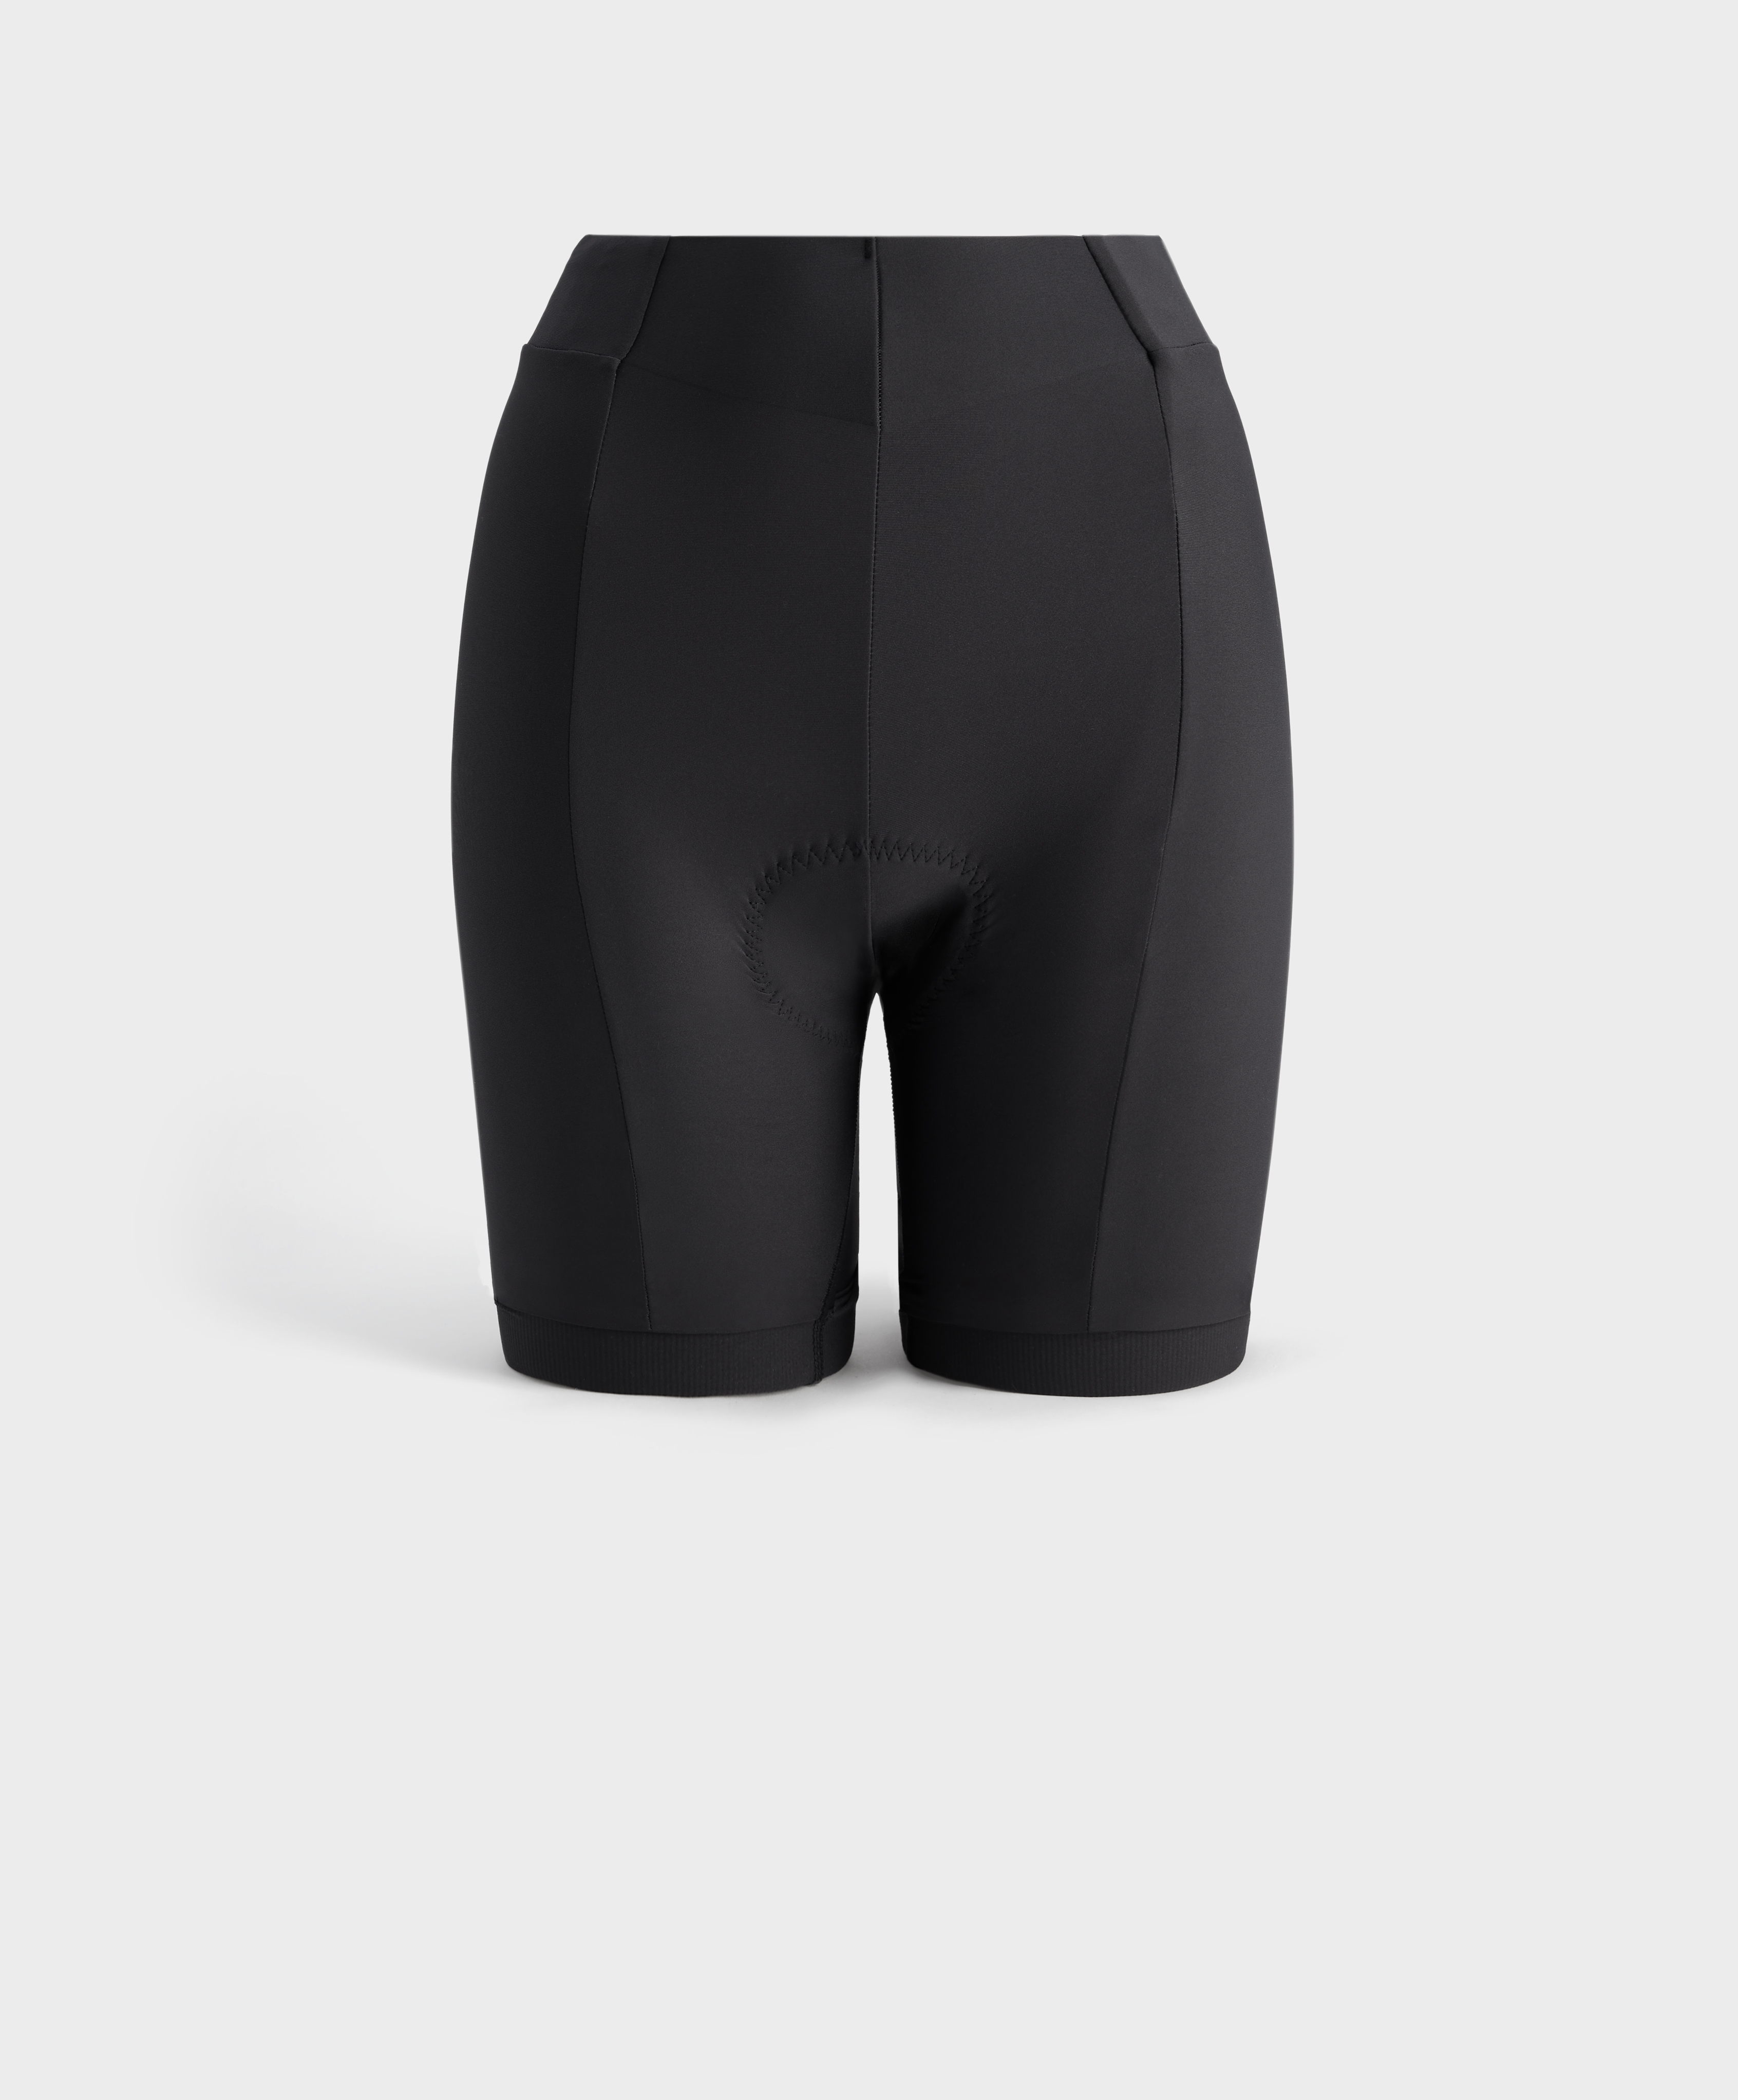 20cm cycling shorts